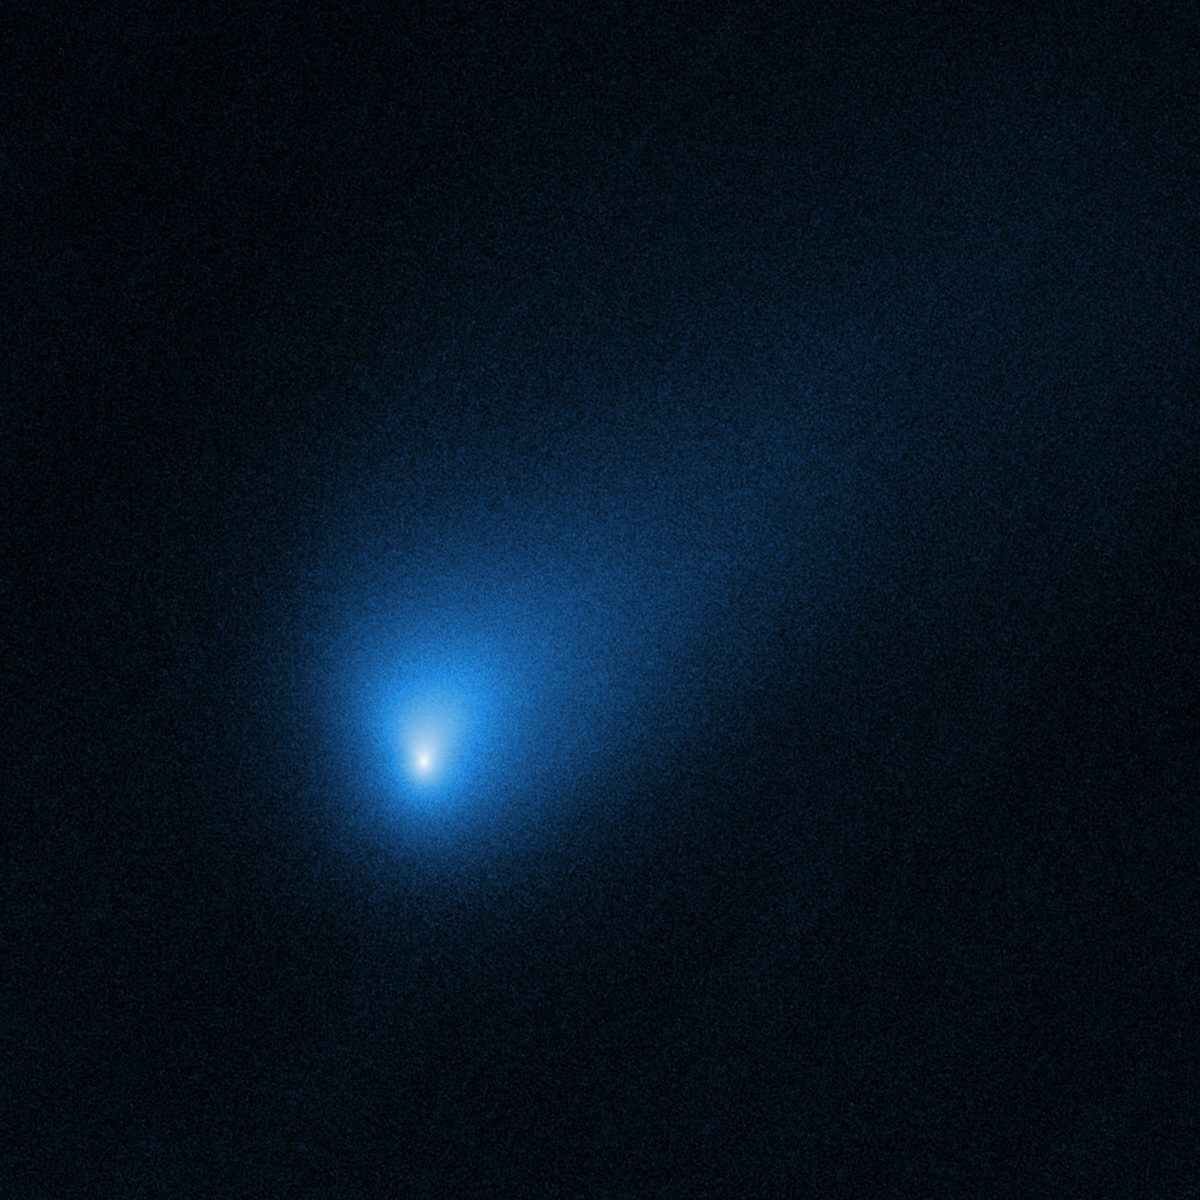 確認された人類史上2番目の恒星間天体ボリソフ彗星の画像。ハッブル宇宙望遠鏡により撮影（Credit: NASA, ESA, and D. Jewitt (UCLA)）